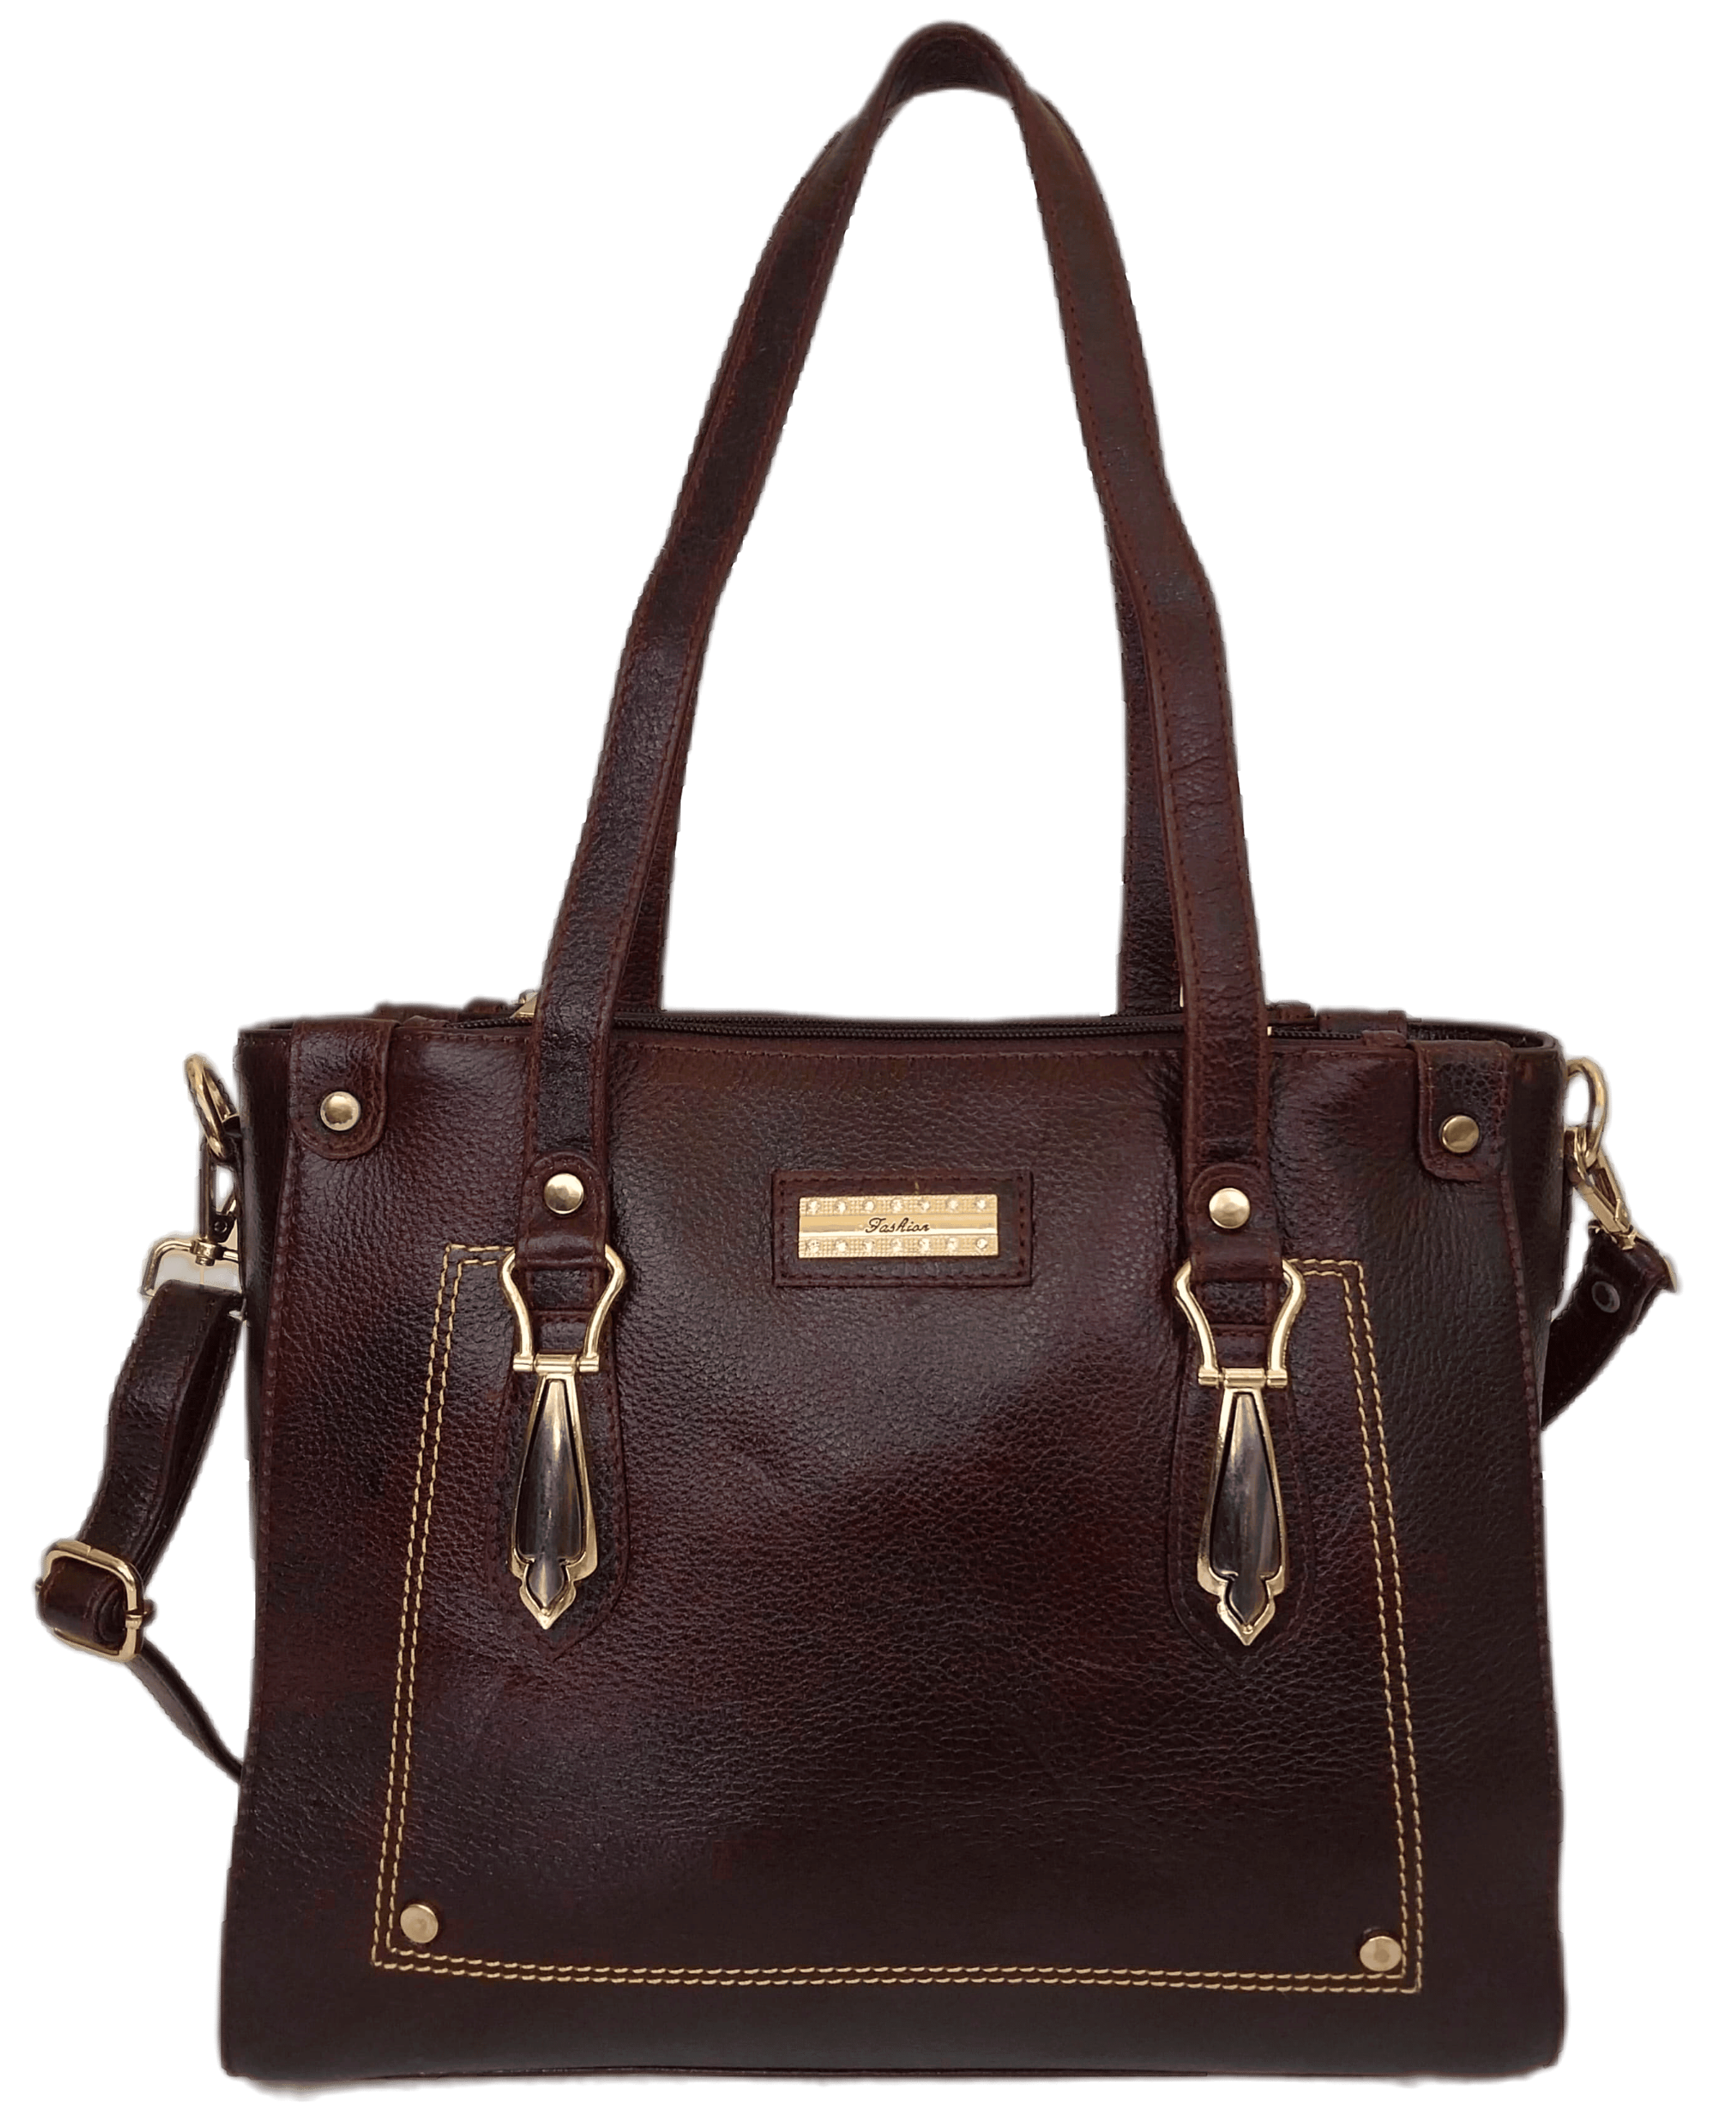 Buy perfect leather Women Beige Shoulder Bag Beige Online @ Best Price in  India | Flipkart.com